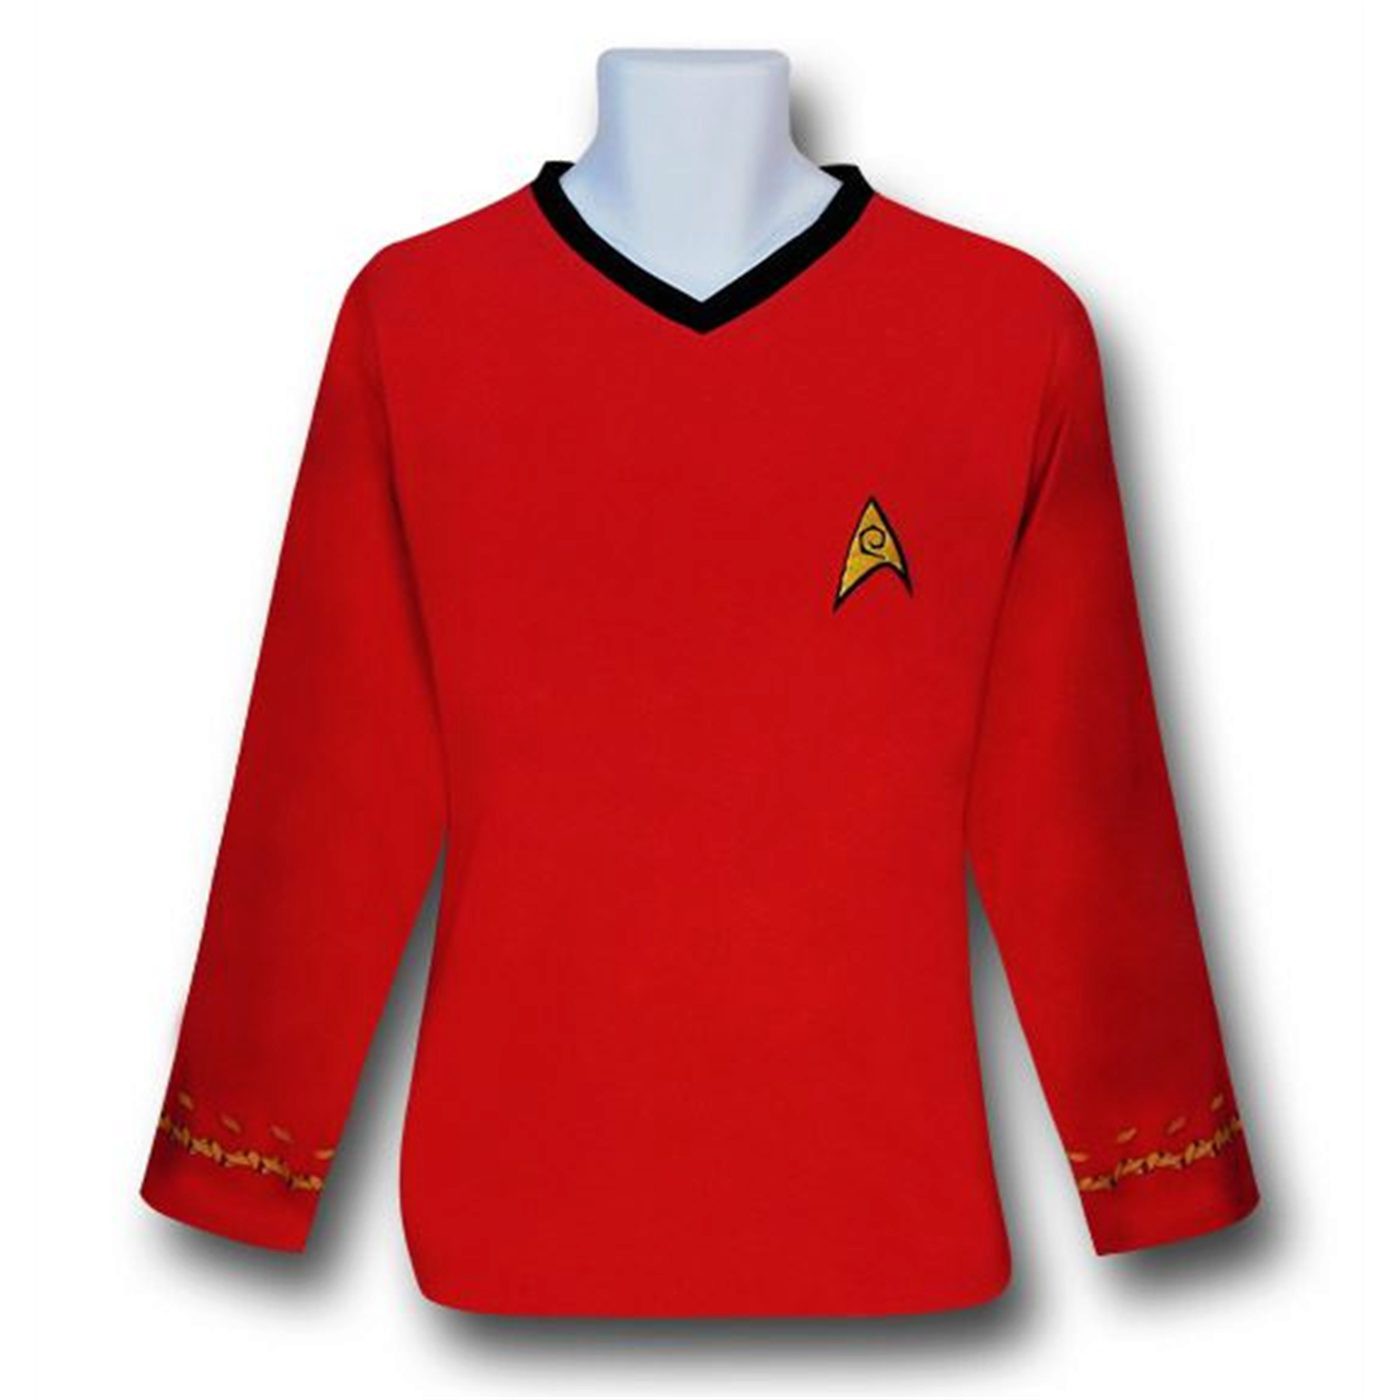 Star Trek Engineering 2-Piece Pajama Set